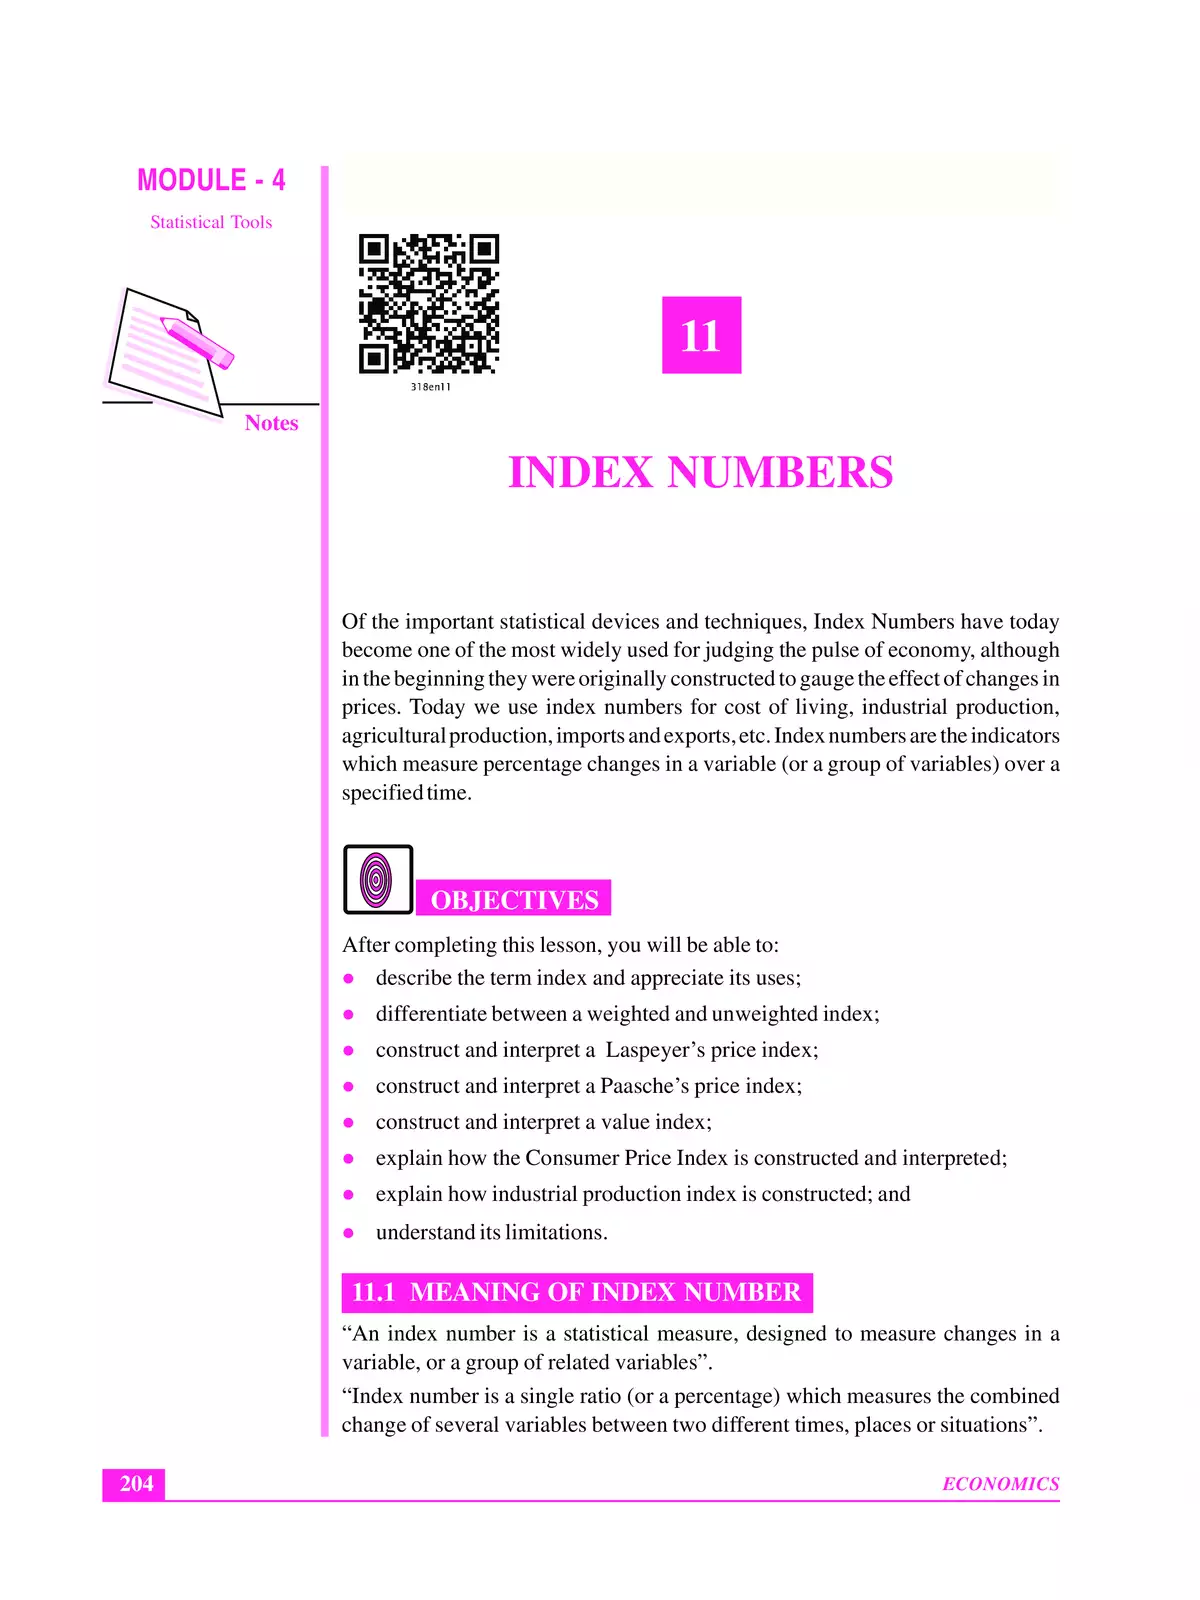 Index Number in Statistics Notes